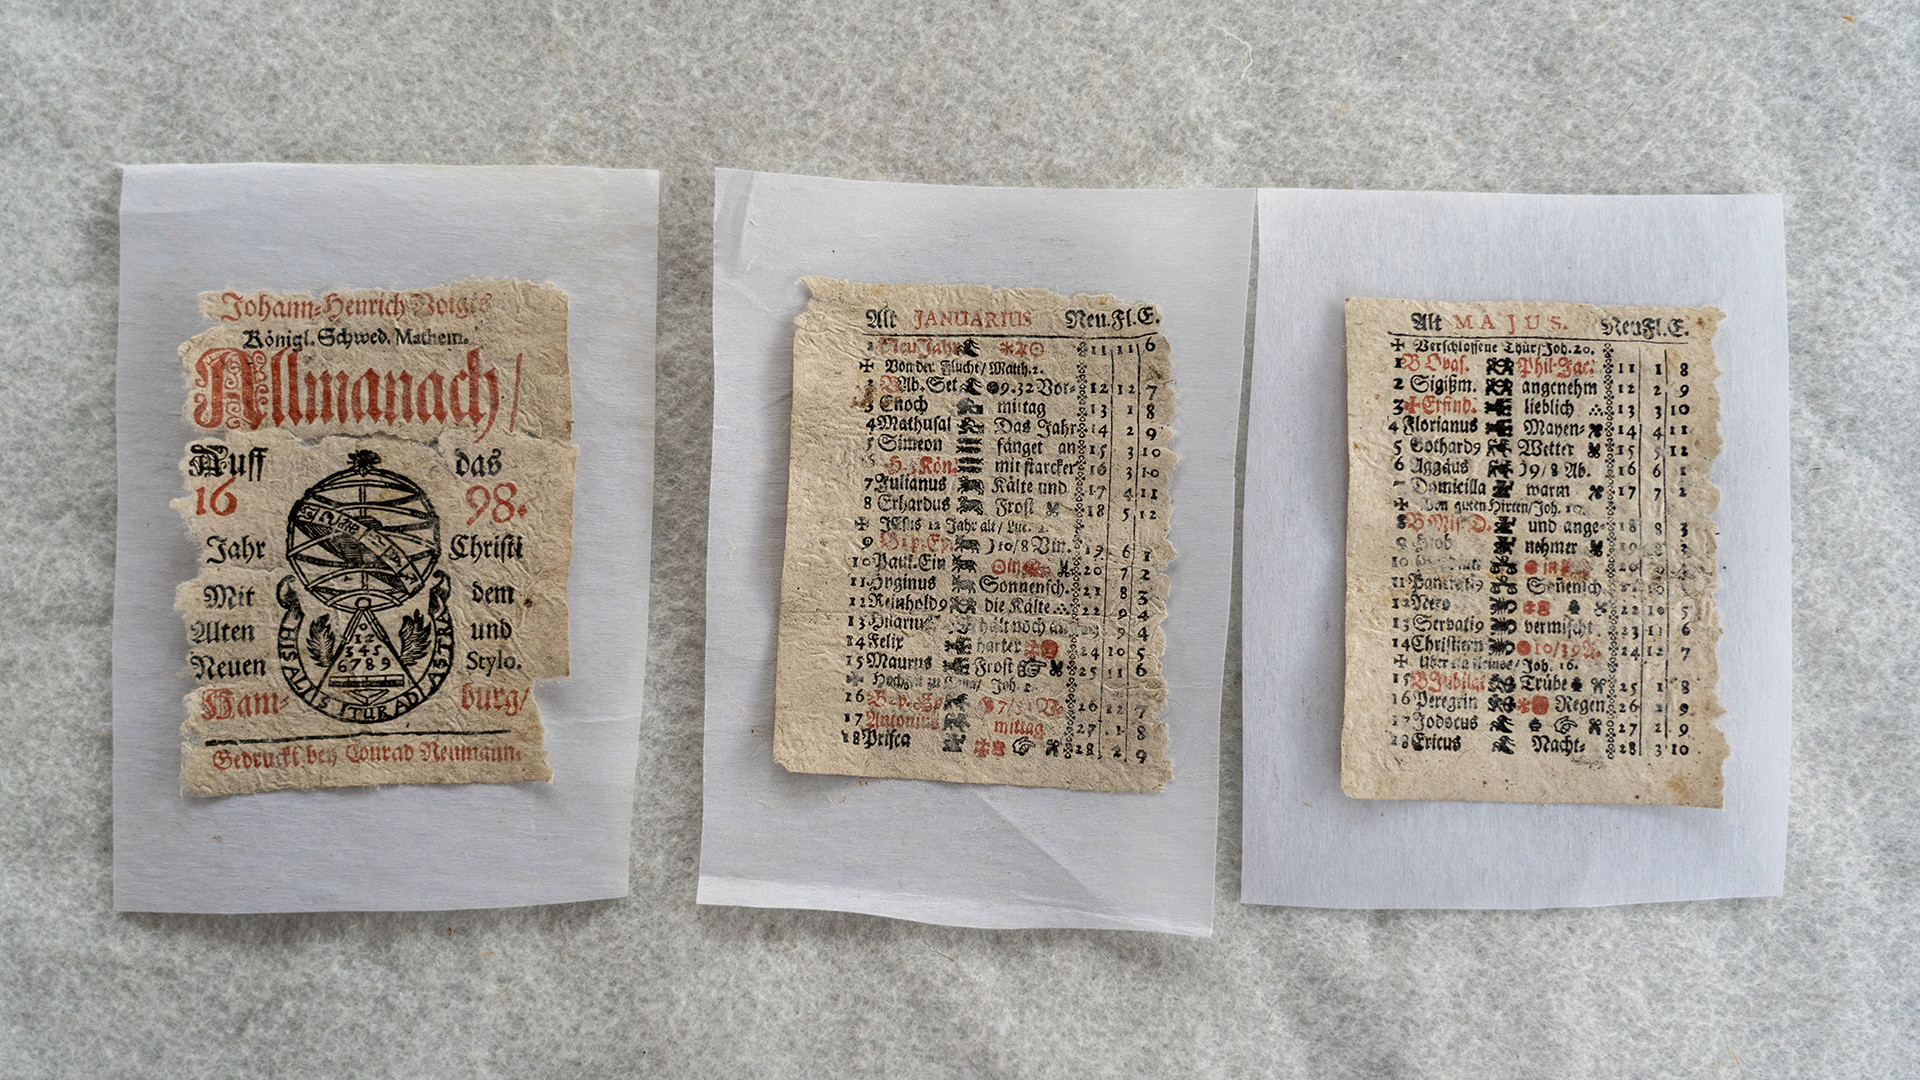 Сохранившиеся страницы королевского шведского математического альманаха 1698 года после реставрации, найденные в районе штурманской рубки судна 